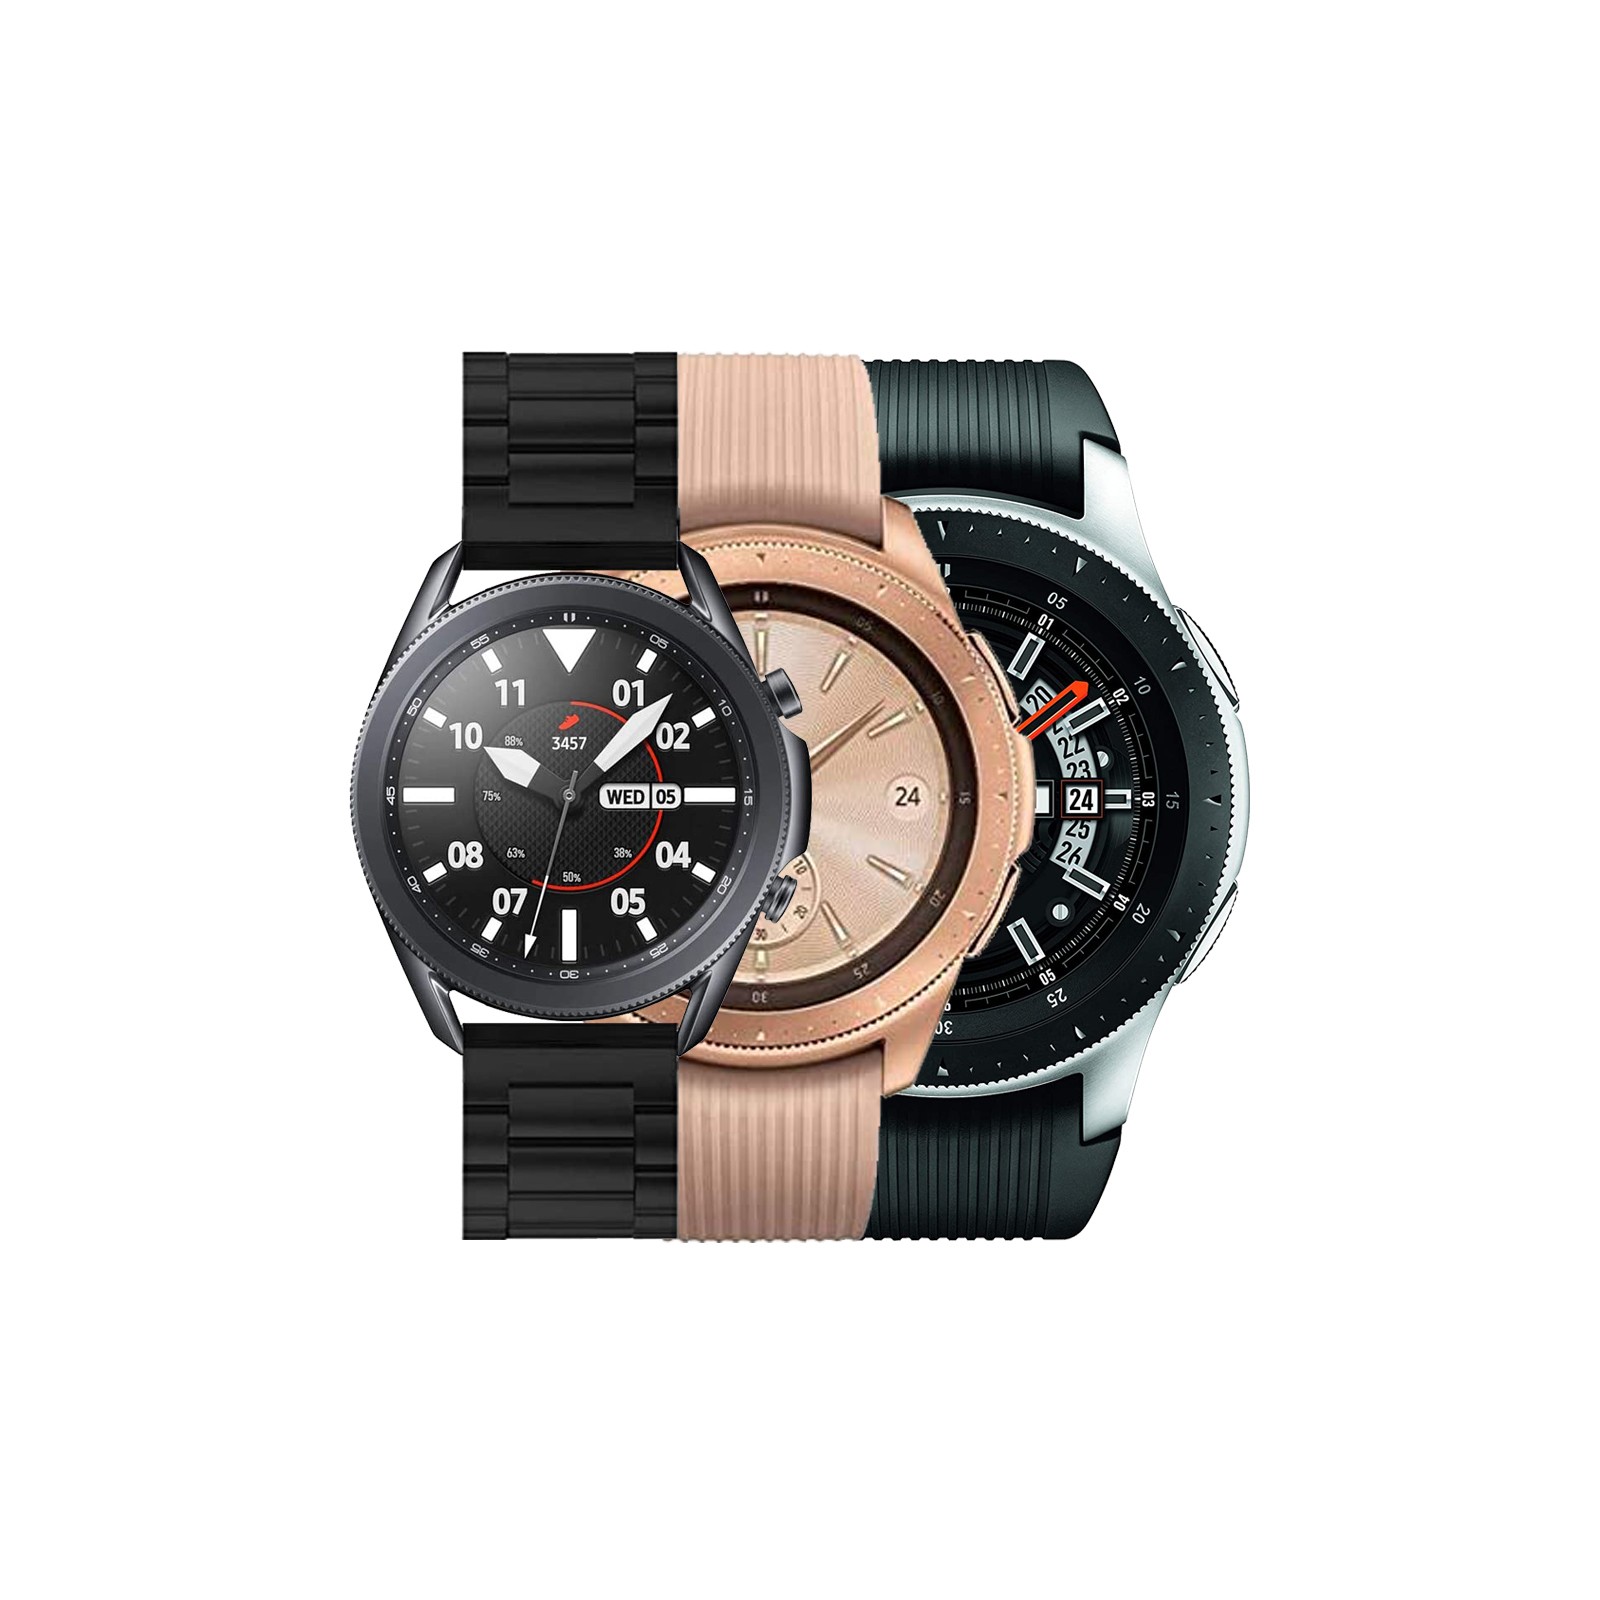 Samsung Galaxy Watch 4G 46mm - Excellent Condition